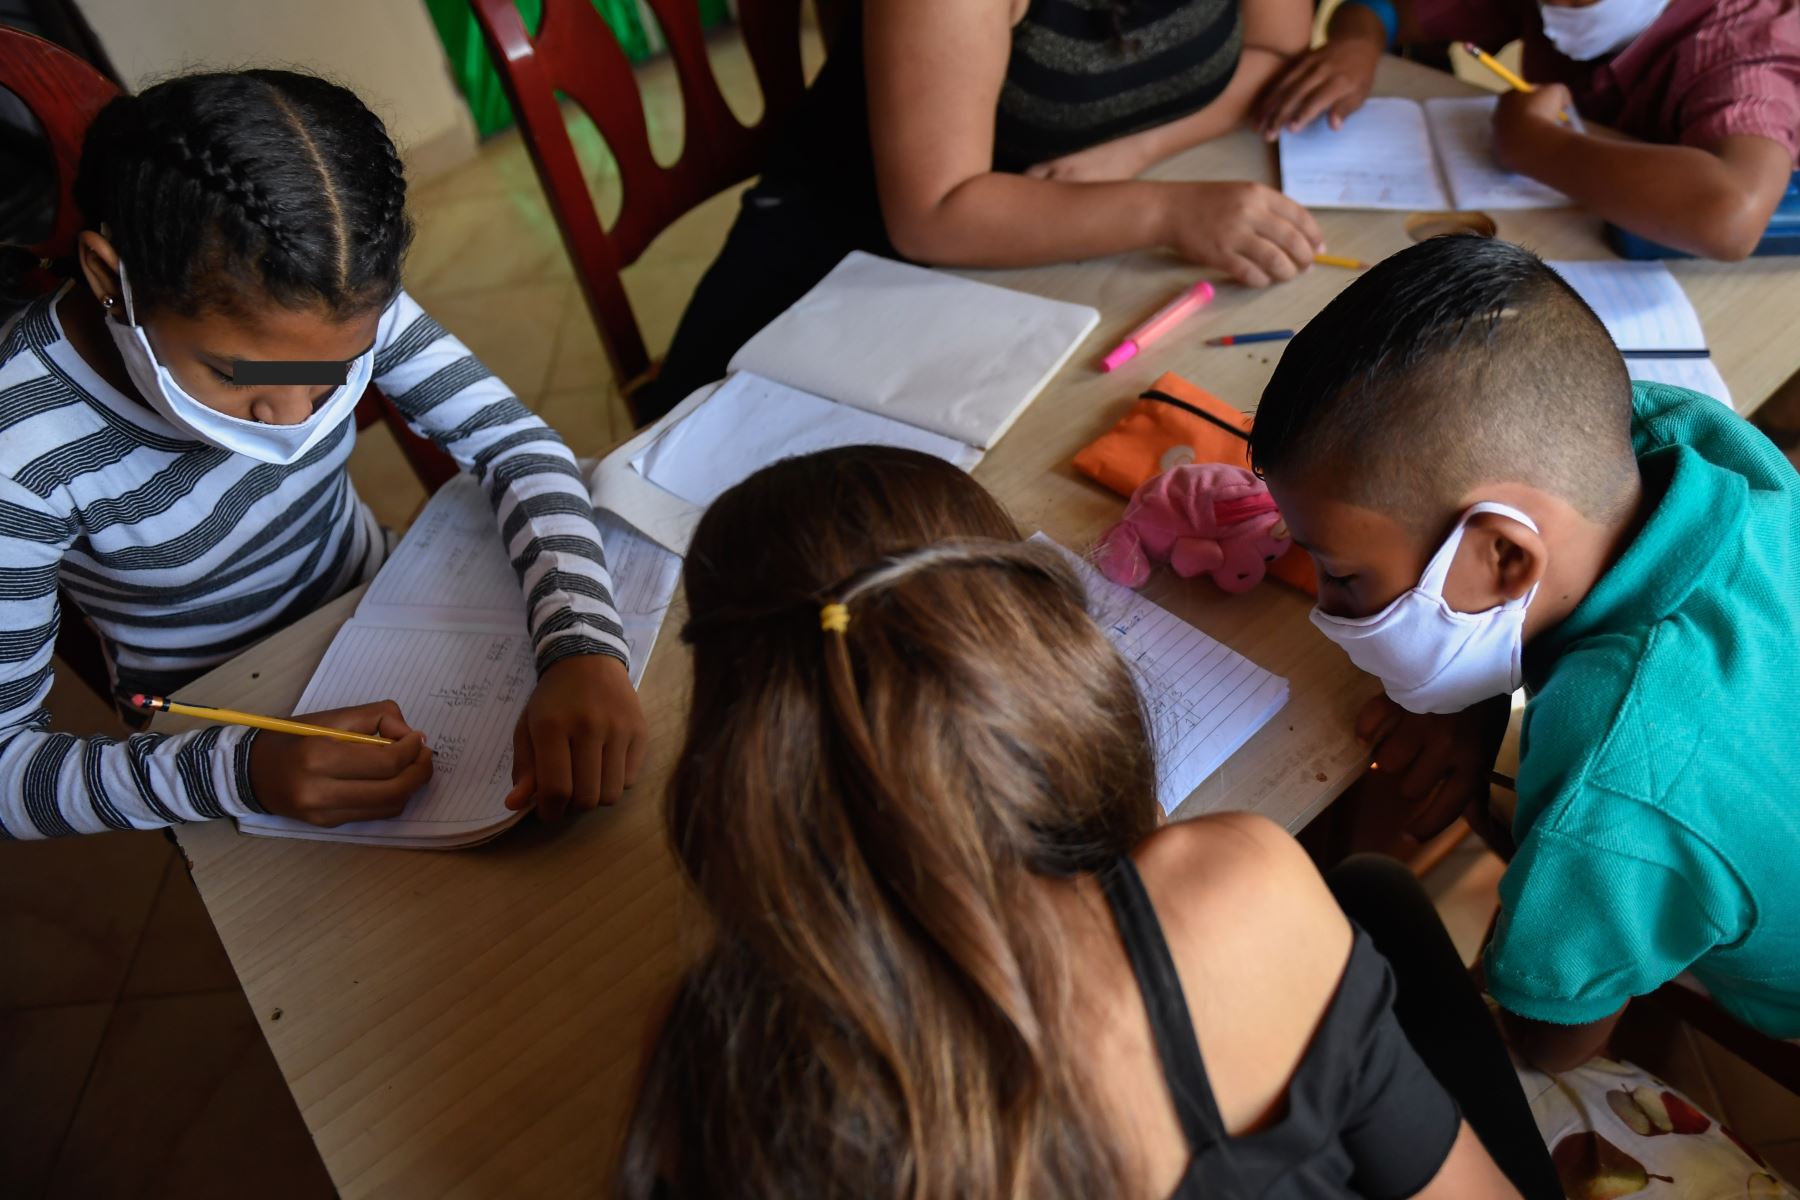 Unicef informó que para proporcionar asistencia humanitaria a los 11.1 millones de menores de Venezuela, México y Centroamérica, está buscando, urgentemente, más de $ 500 millones, a fin de responder a sus necesidades. AFP